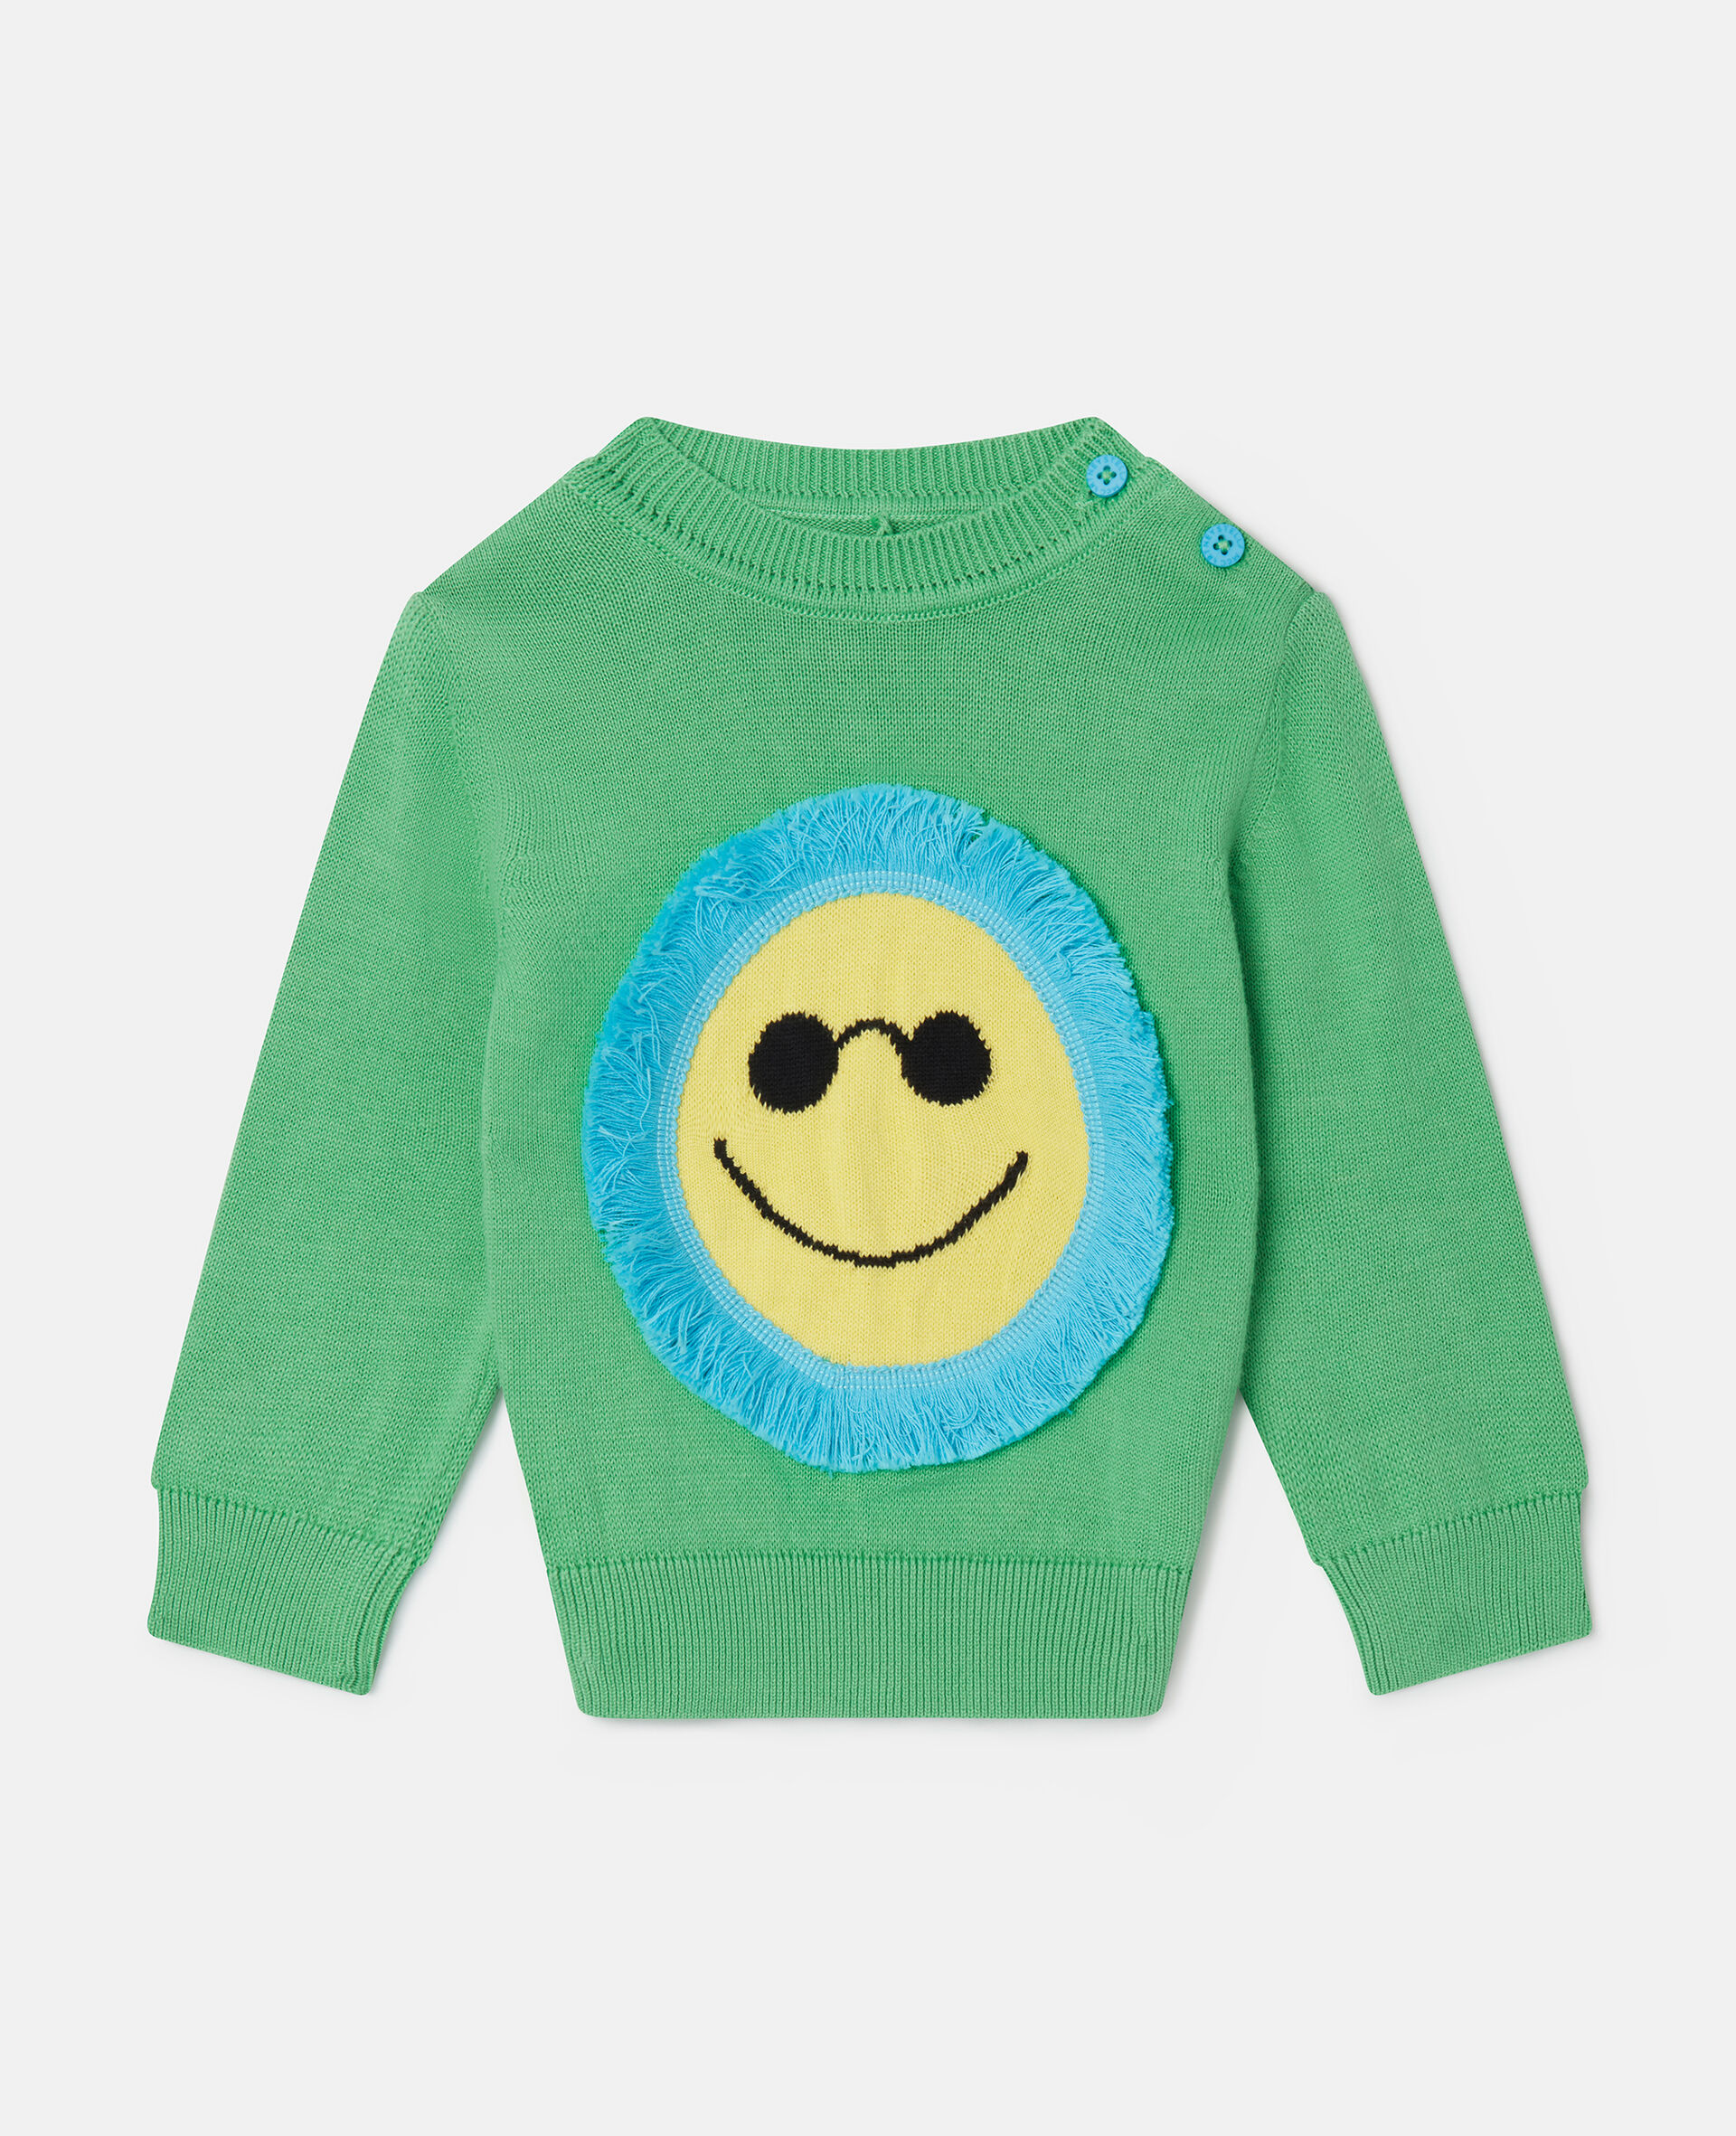 Fringed Sunshine Sweatshirt-Green-large image number 0